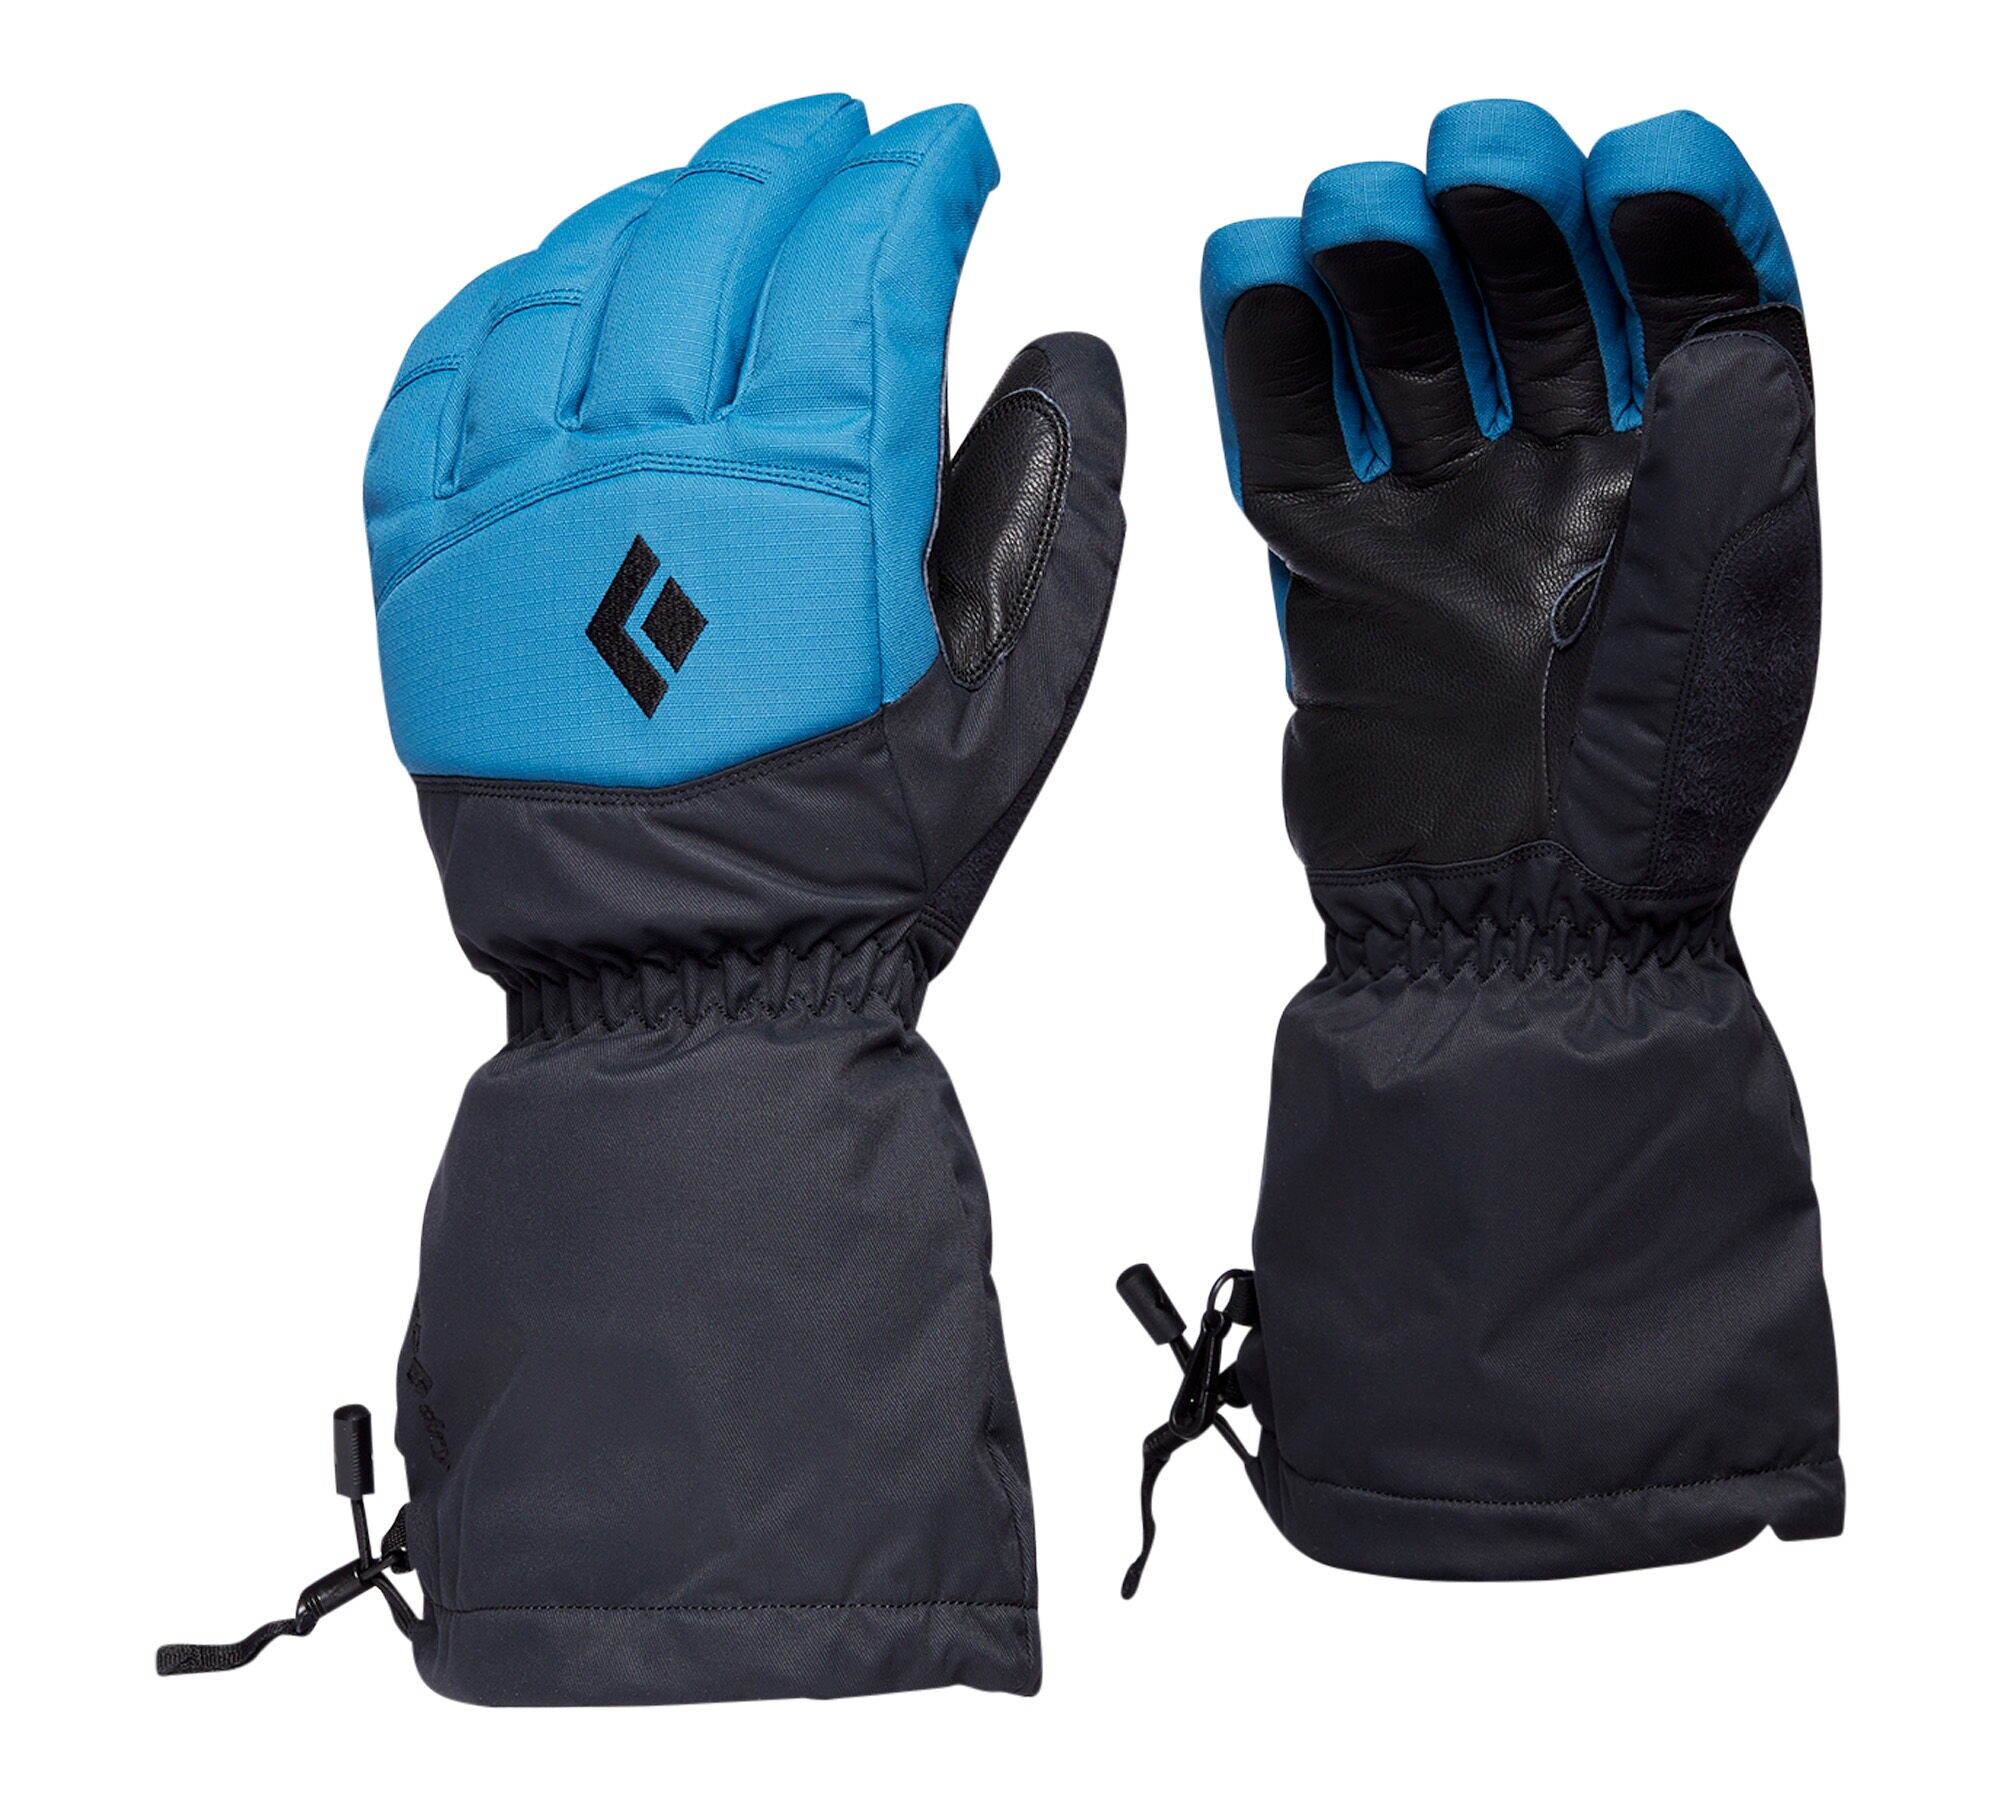 Black Diamond Recon Gloves - Ski gloves